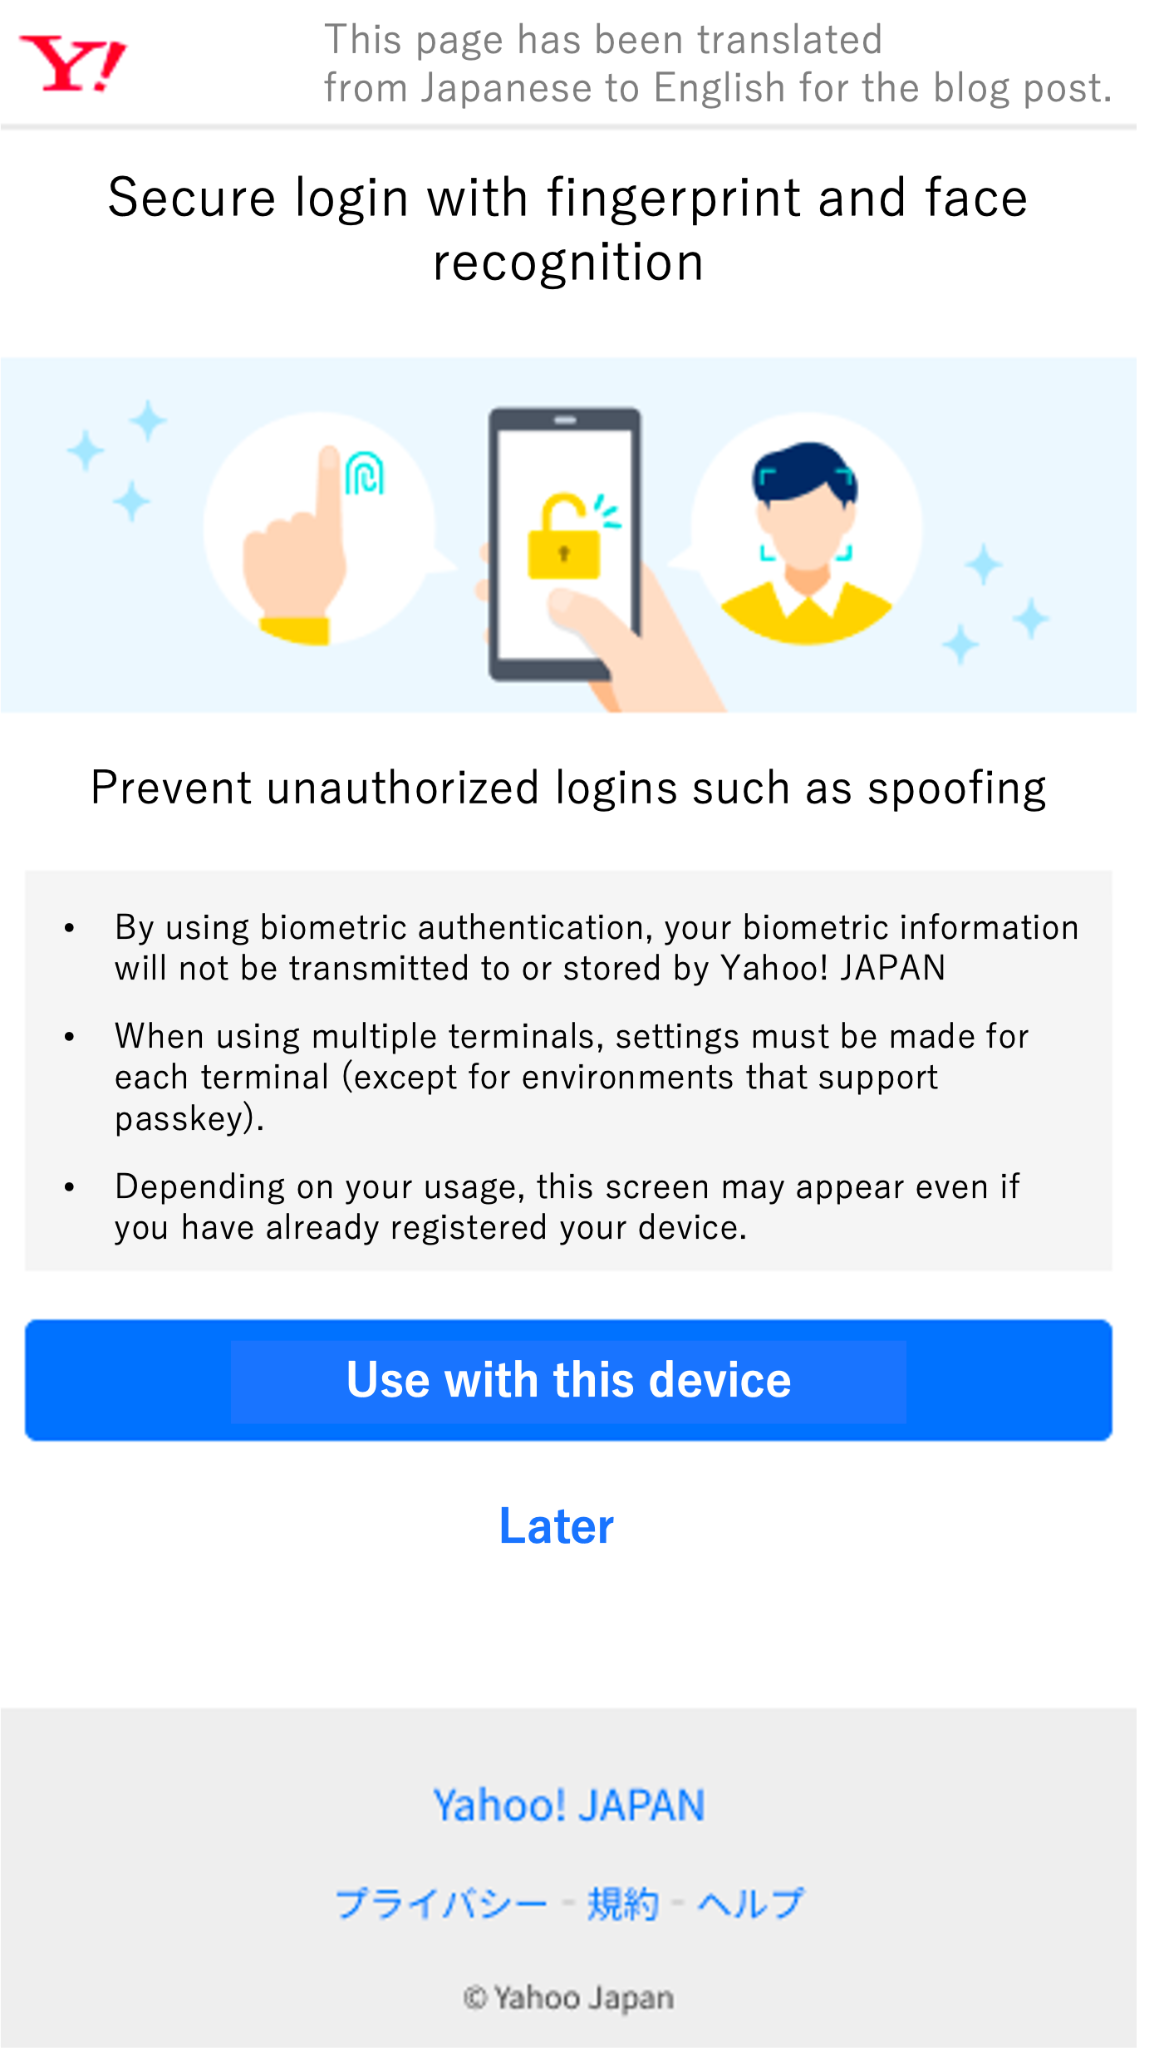 Yahoo!iOS 上的 JAPAN 通行密钥注册页面（对照组）。